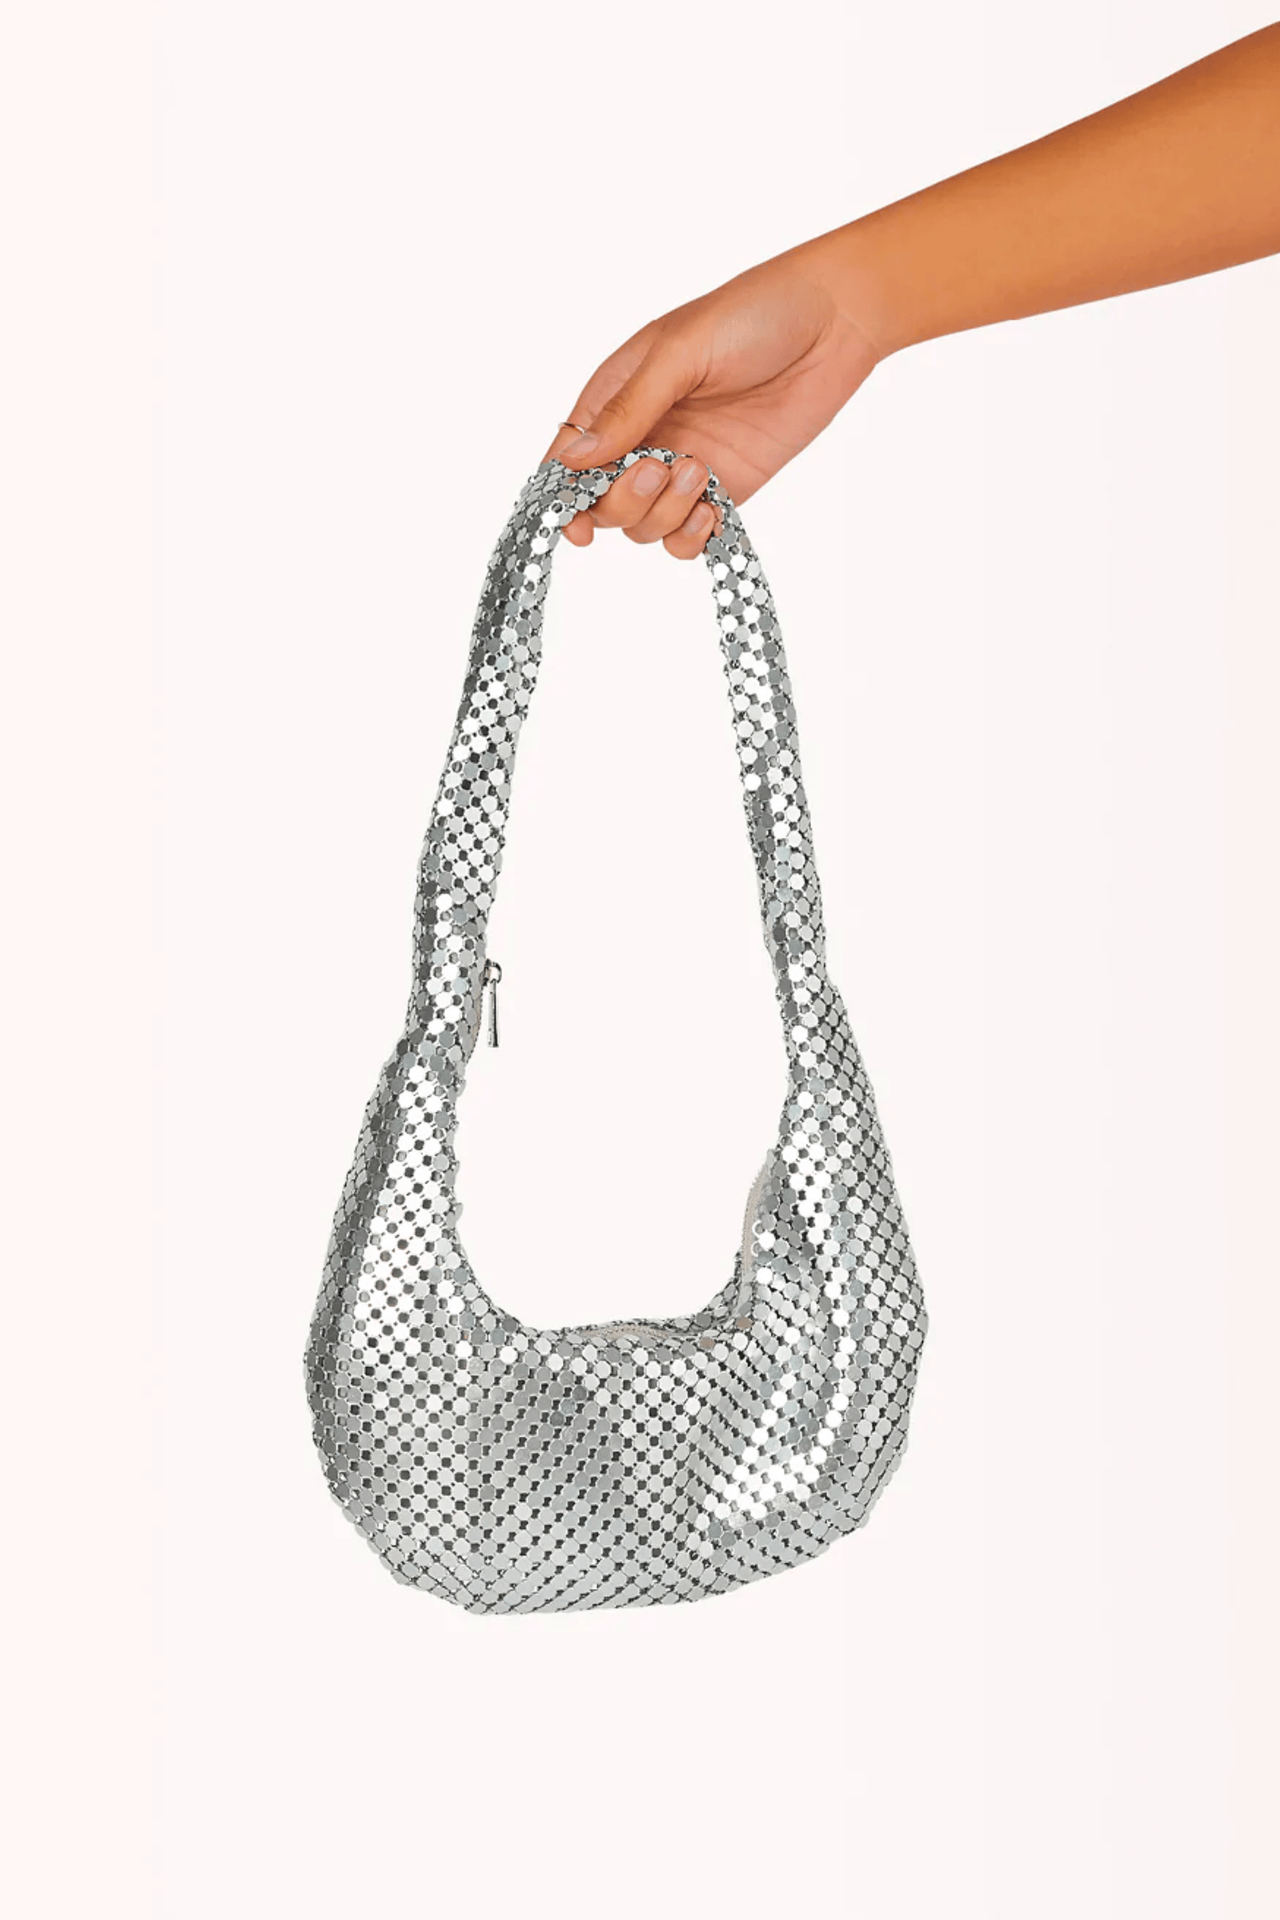 Luna Shoulder Bag Silver Glow Mesh, Handbags by Billini Shoes | LIT Boutique